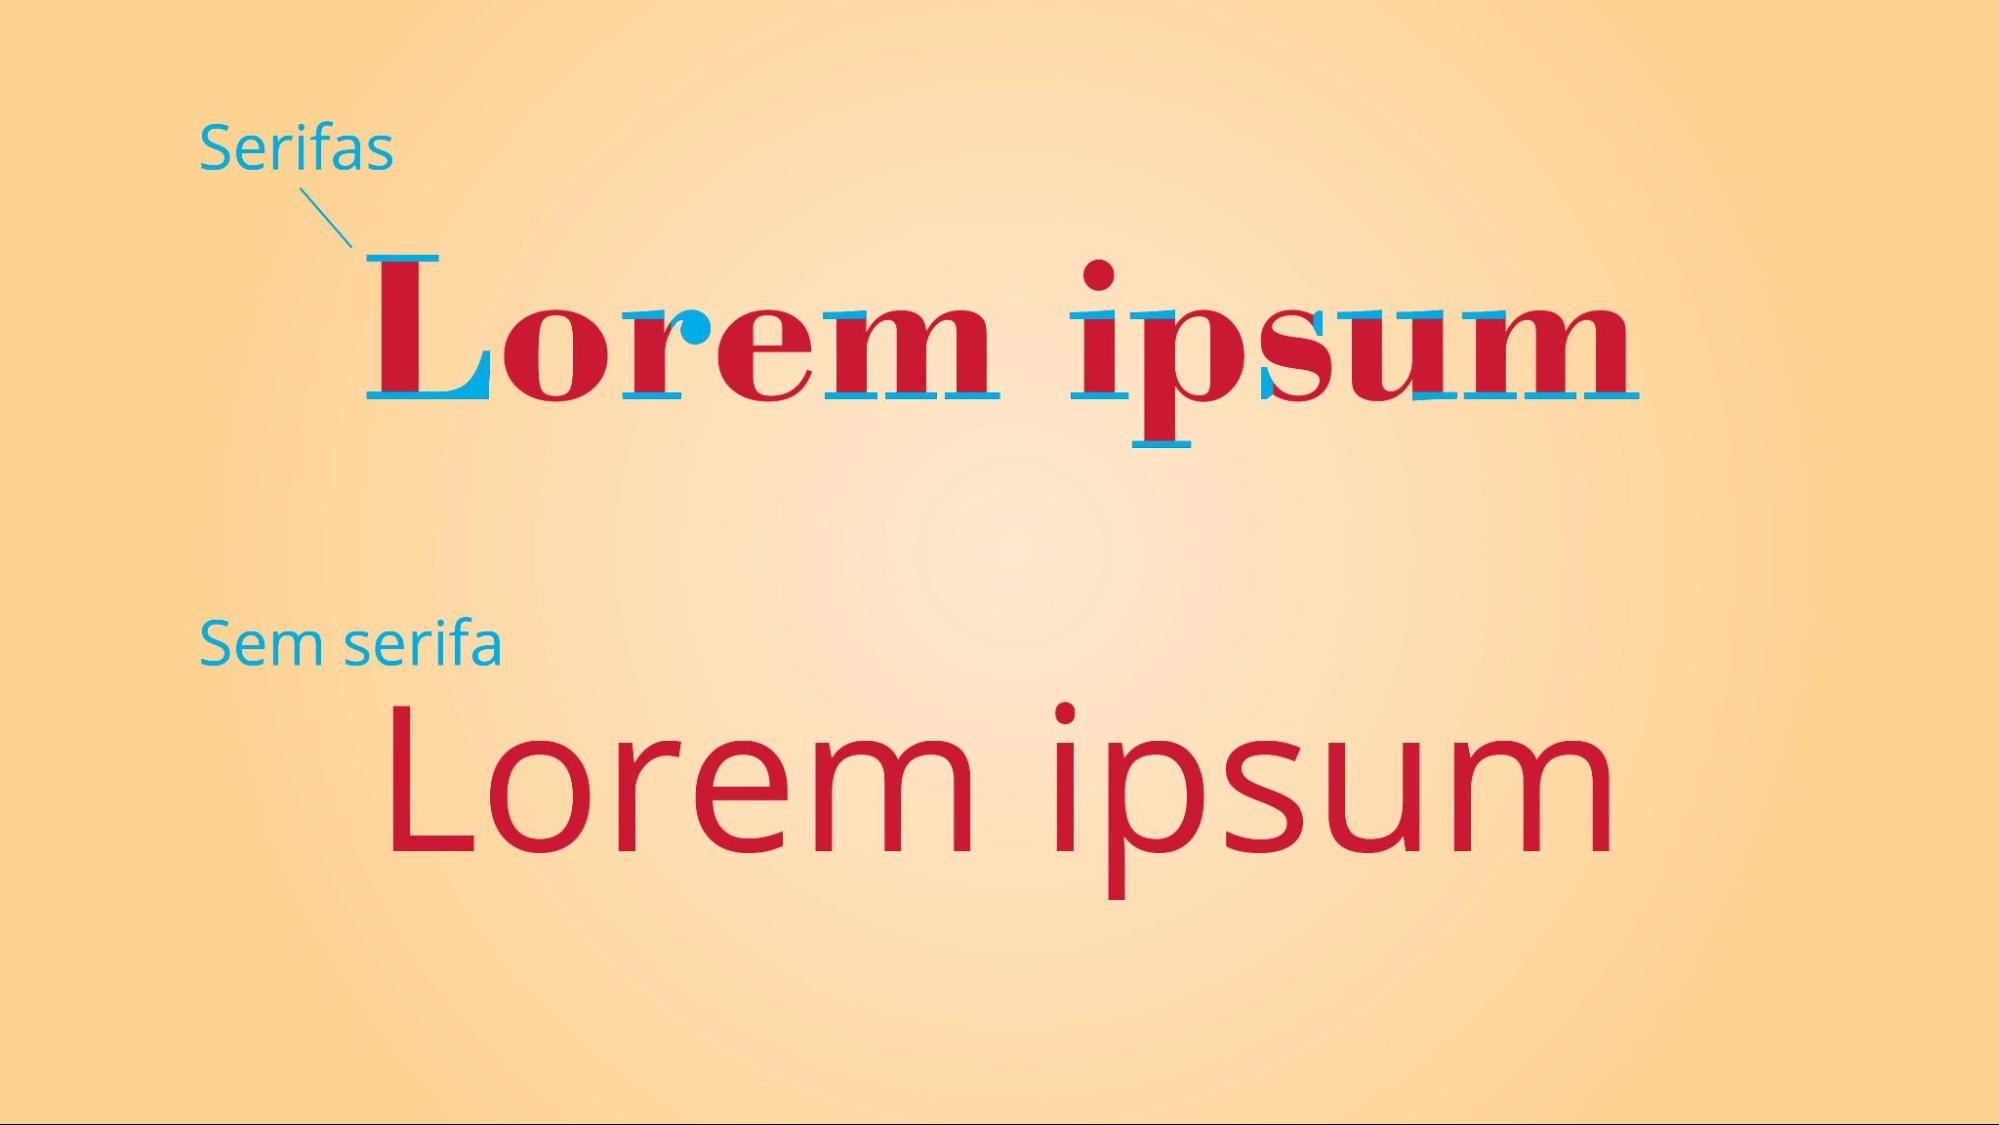 Imagem que em que se lê duas frases que dizem “Lorem ipsum”. A primeira frase usa uma fonte com serifa, enquanto a segunda frase usa uma fonte sem serifa